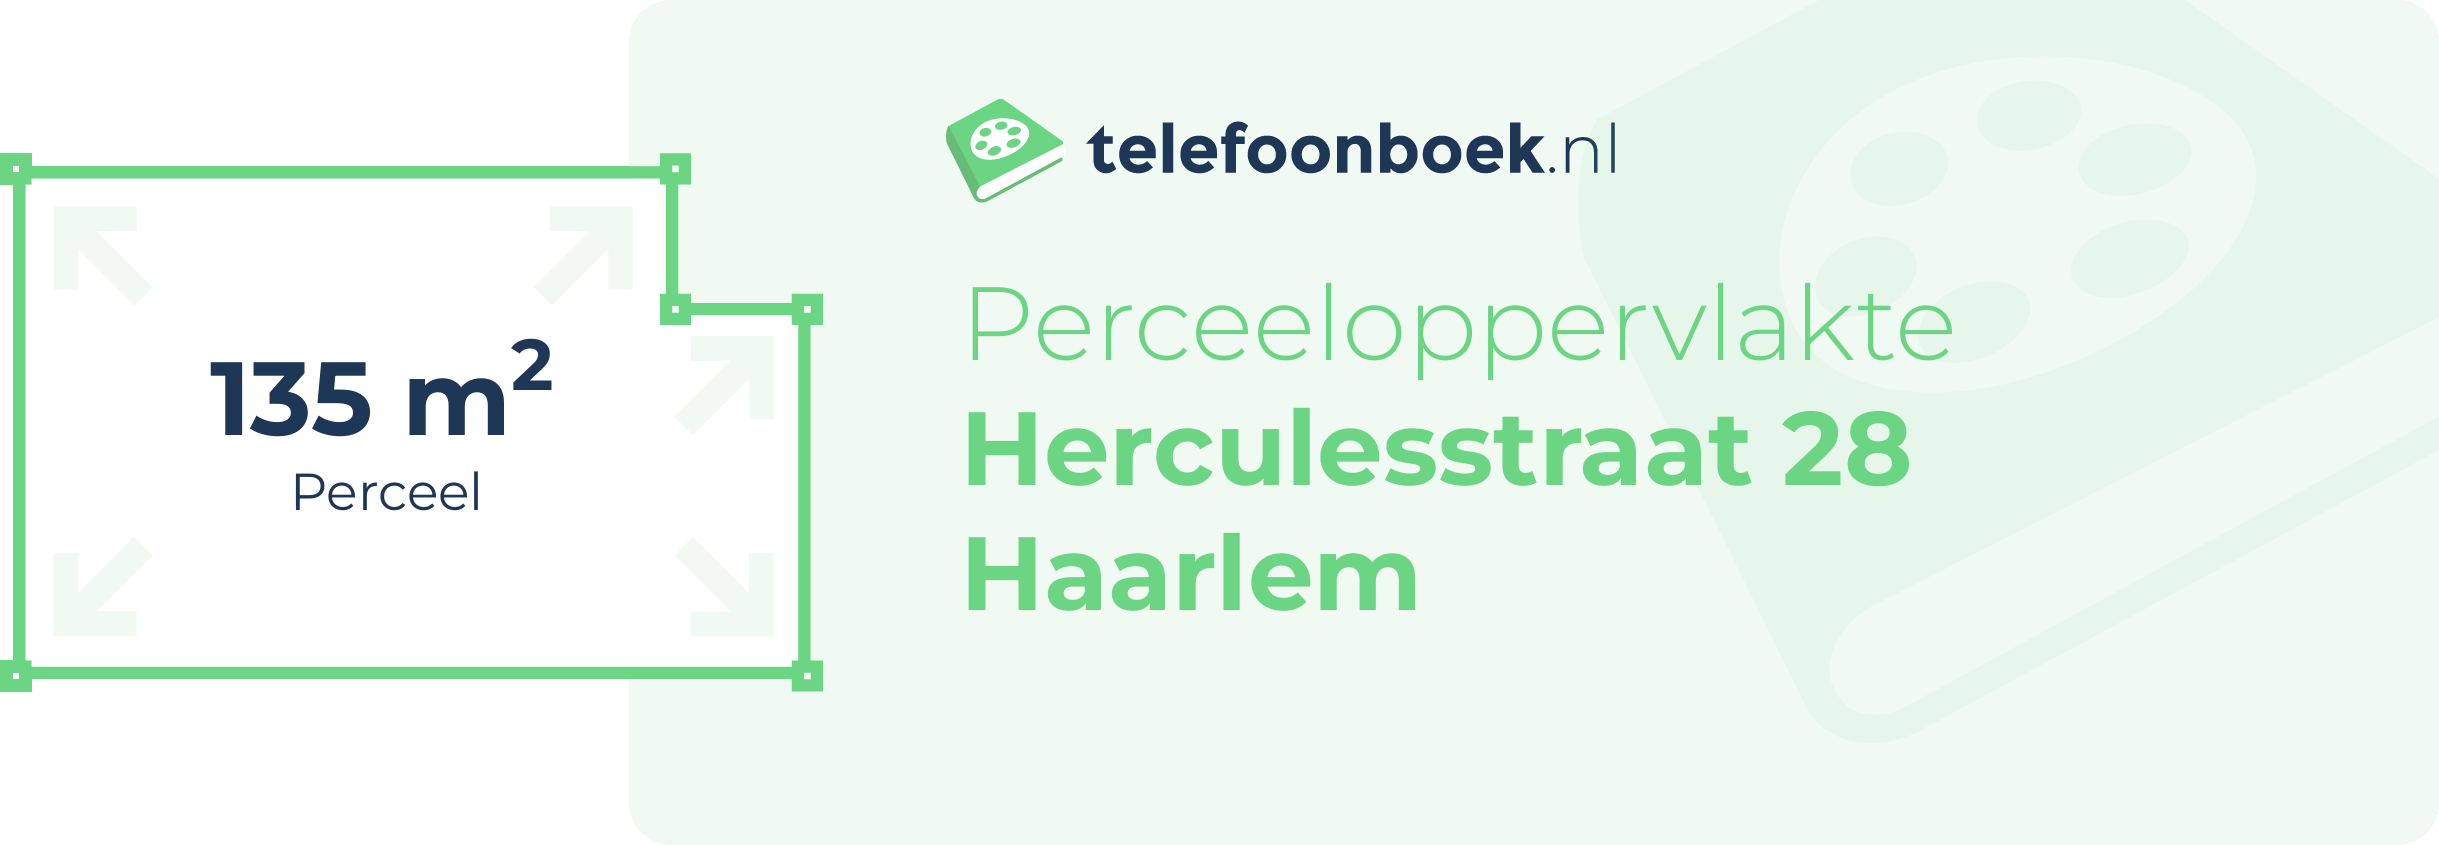 Perceeloppervlakte Herculesstraat 28 Haarlem